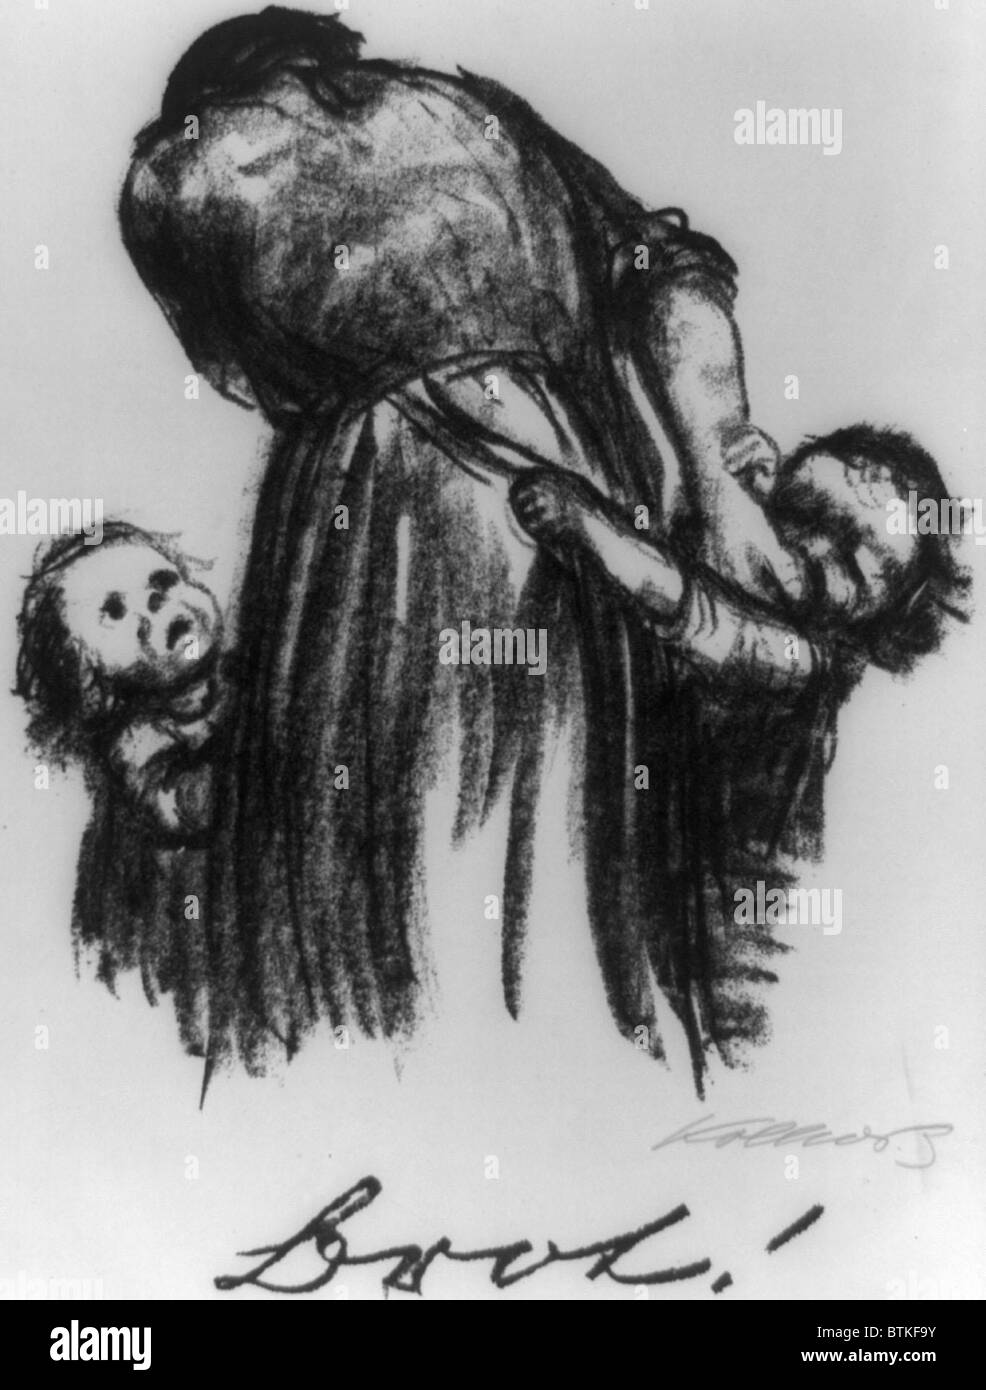 Deux petits enfants qui mendient pour mère, pain, artiste expressionniste allemande Kathe Kollwitz's 1924 Lithographie BROT ! (Pain !). Kollwitz (1867-1945) a été réprimée par les Nazis au cours de la dernière décennie de sa vie. Banque D'Images